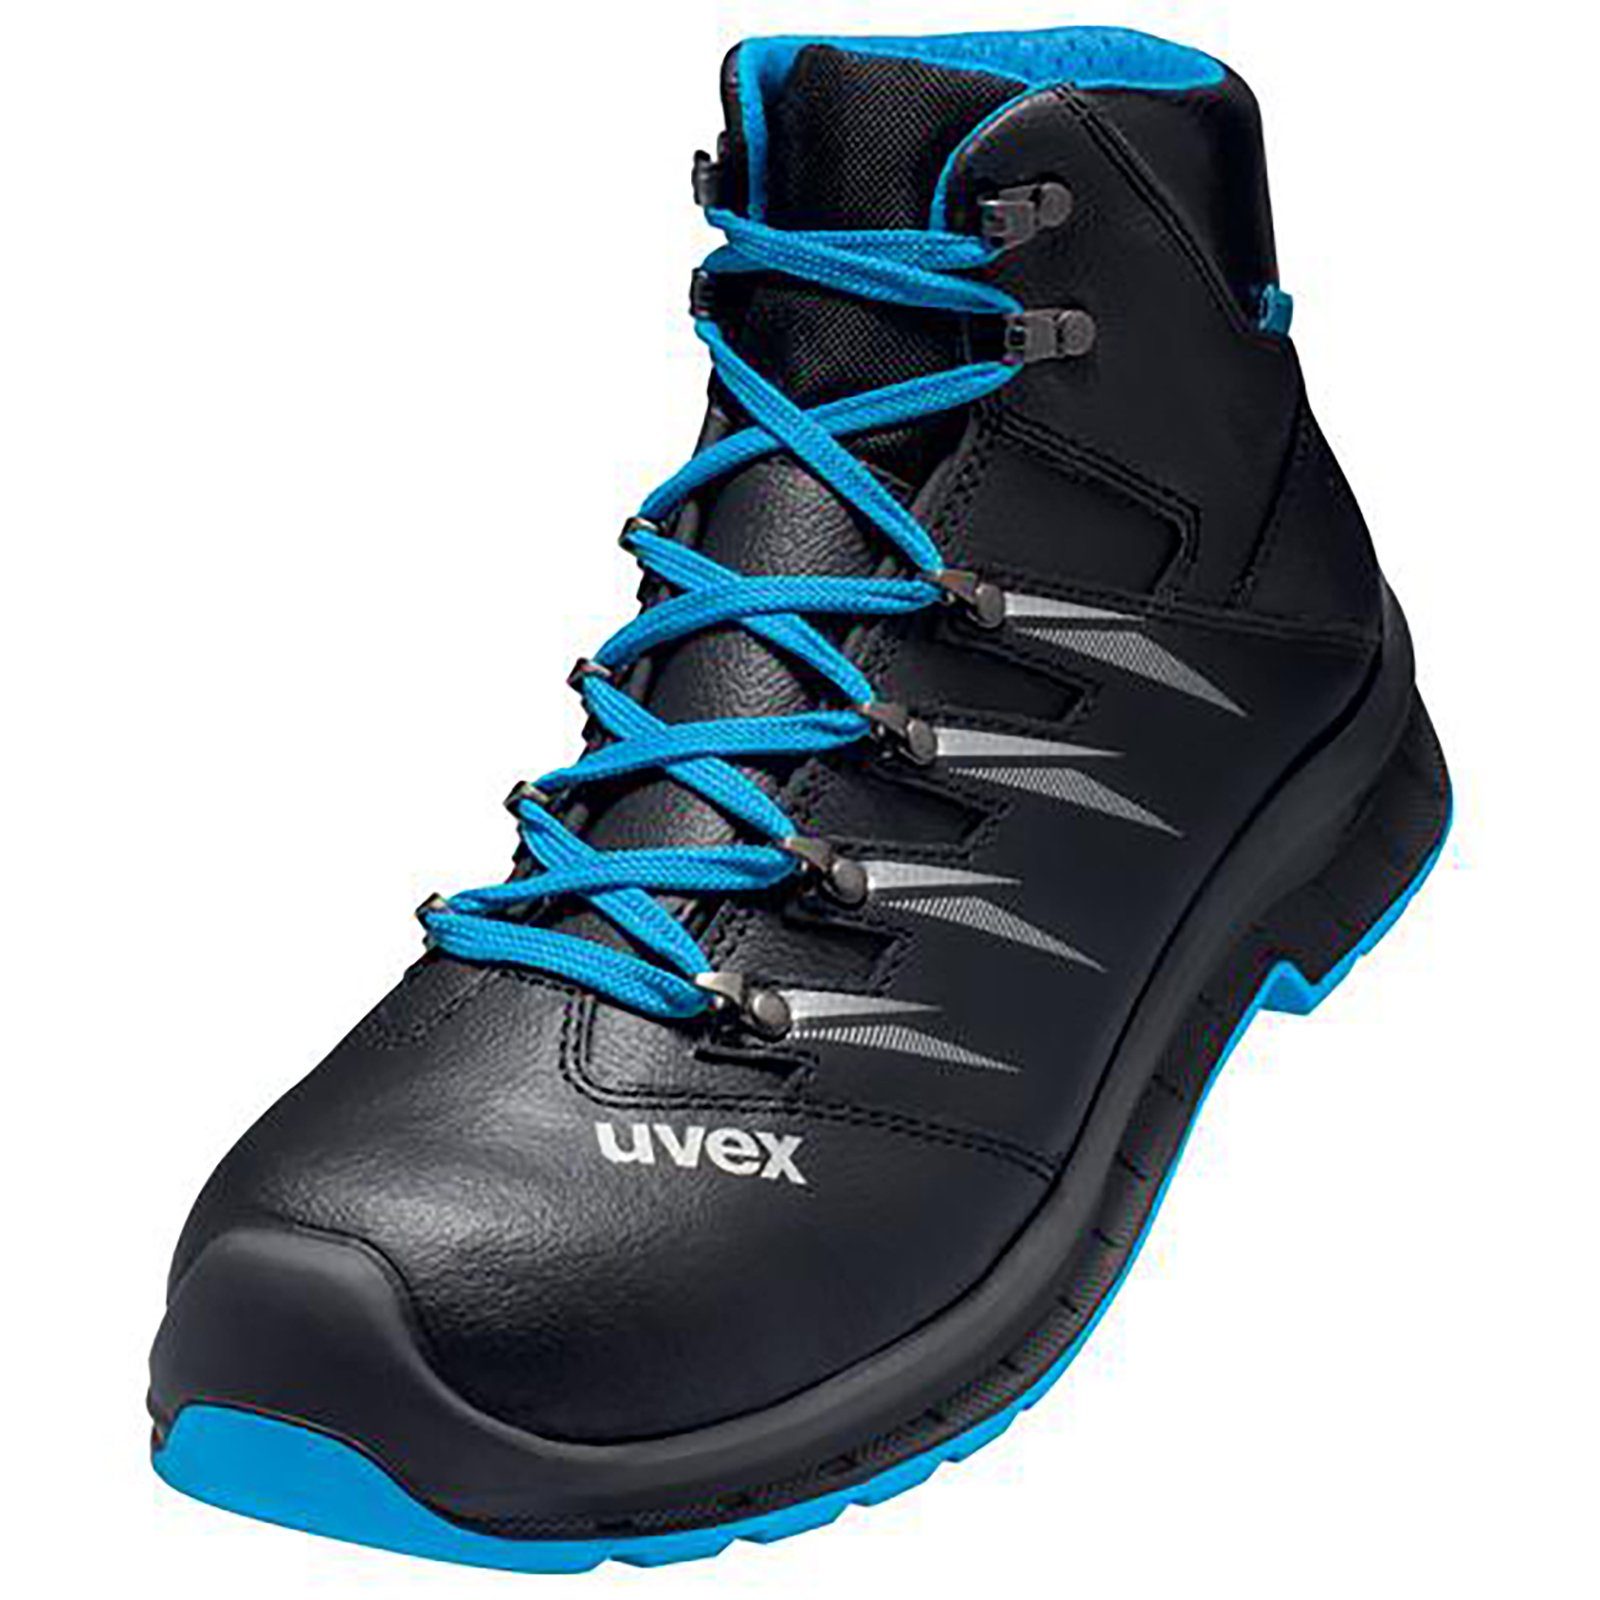 Uvex 2 trend Stiefel S3 blau, schwarz Weite 11 Sicherheitsstiefel | Sicherheitsschuhe